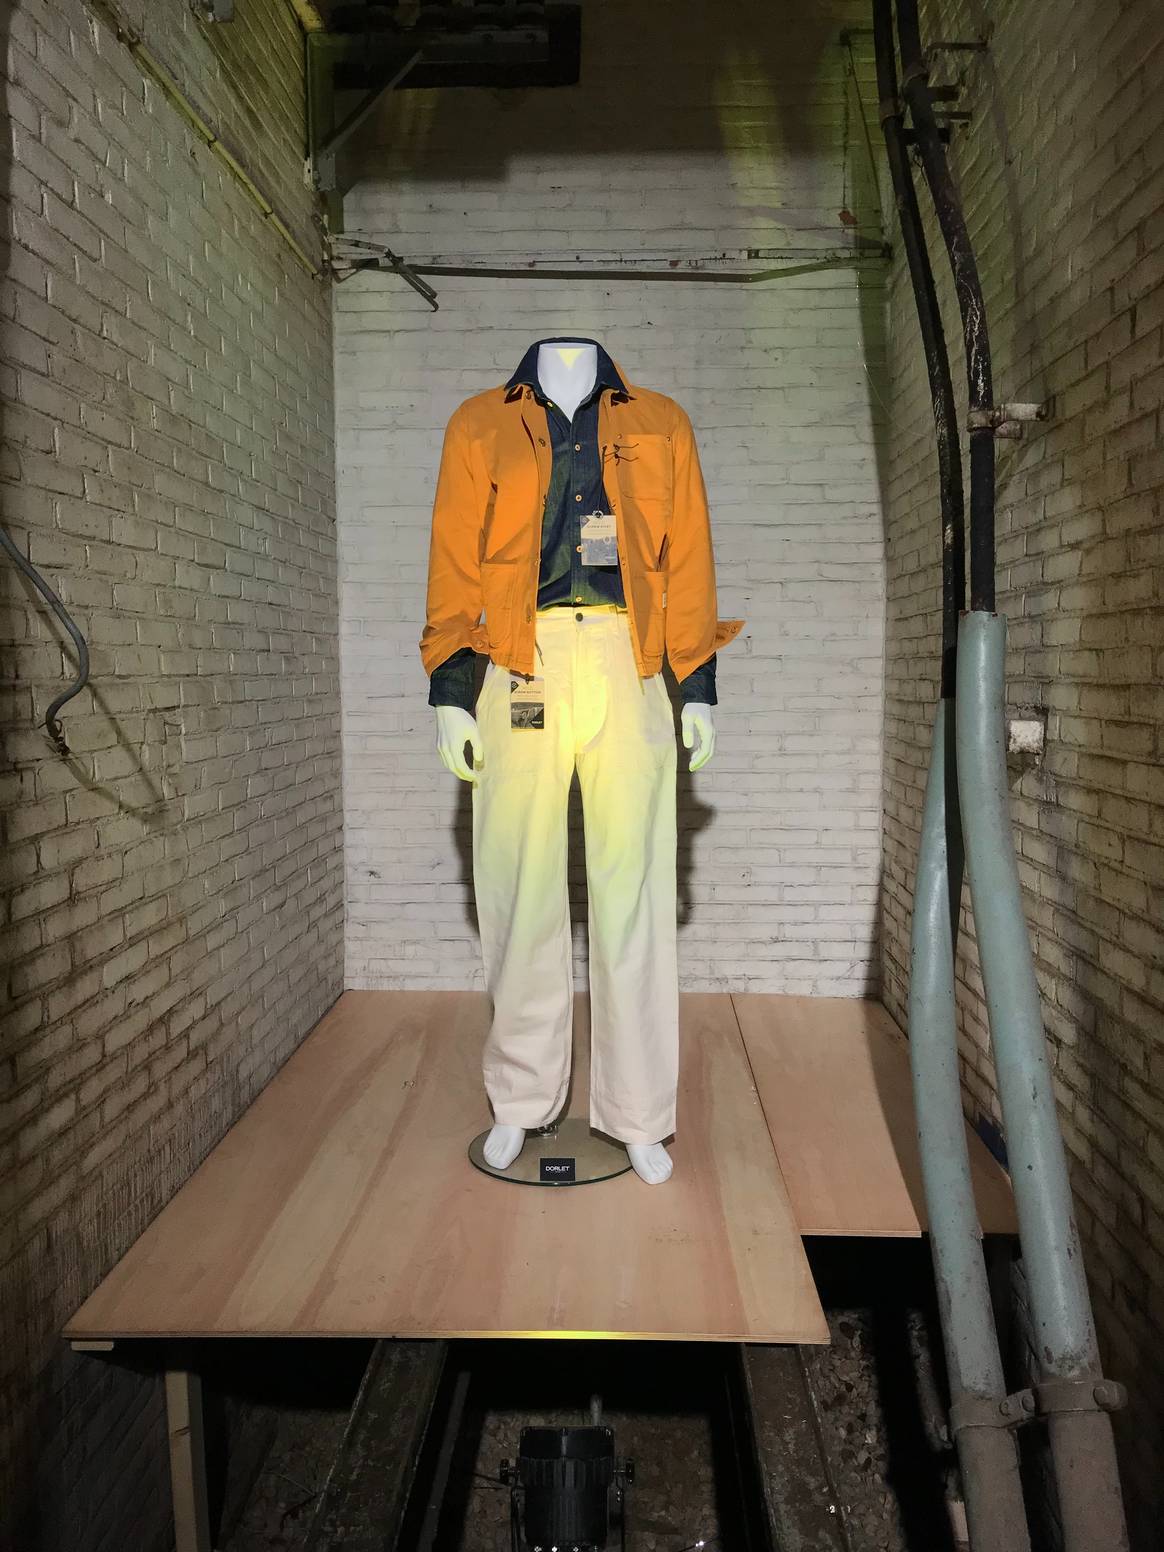 Een van de looks die Kingpins aanbiedt ter inspiratie voor diverse afwerkingen van kledingstukken. Beeld door FashionUnited/Caitlyn Terra